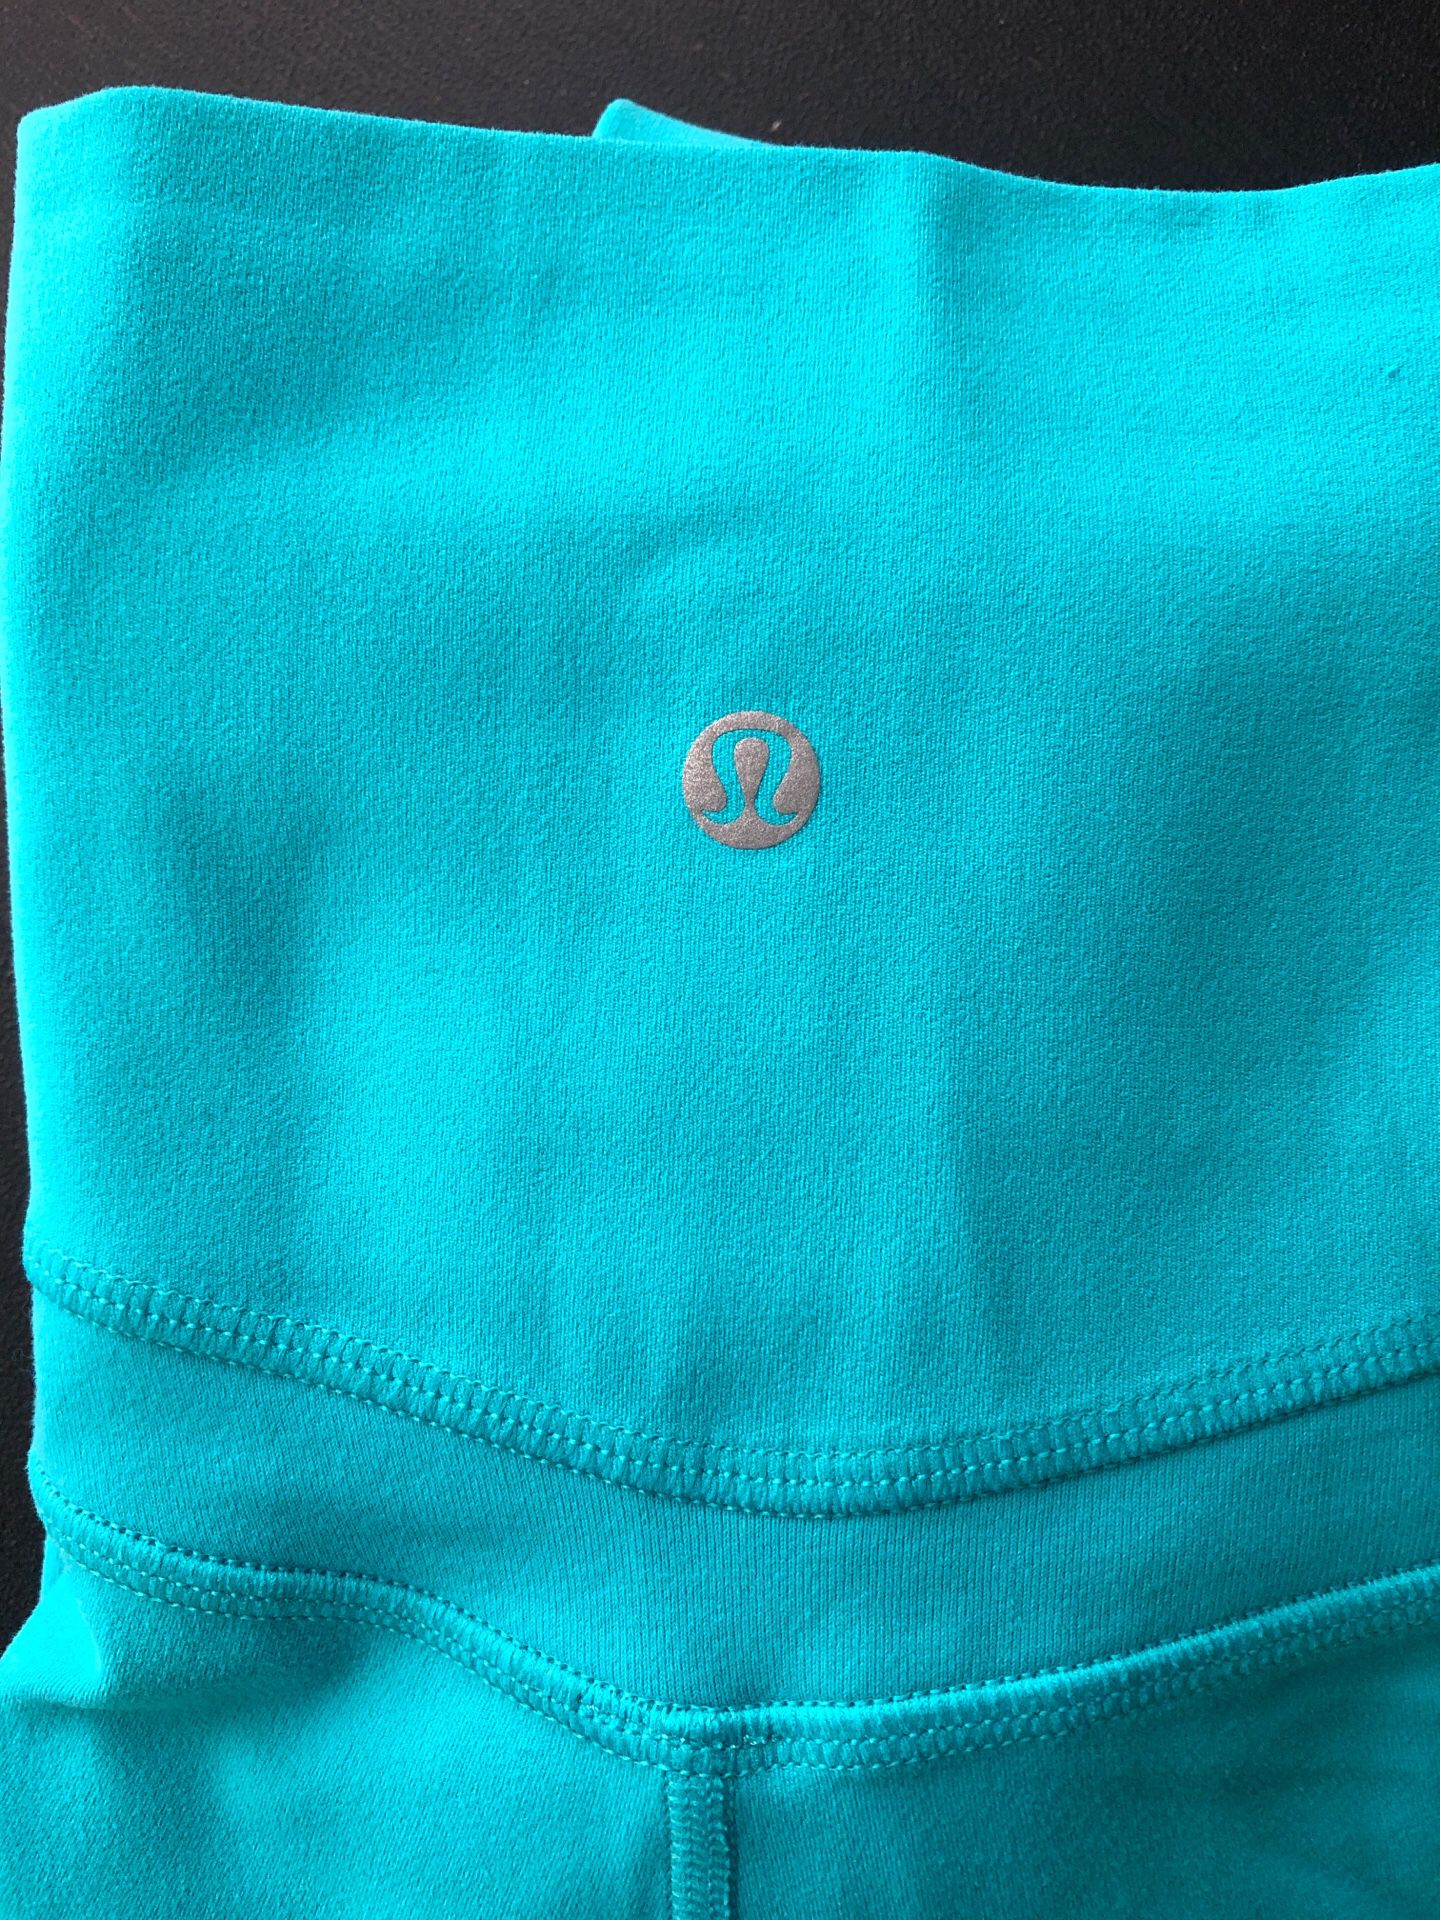 Lululemon - size 6 - turquoise align pant